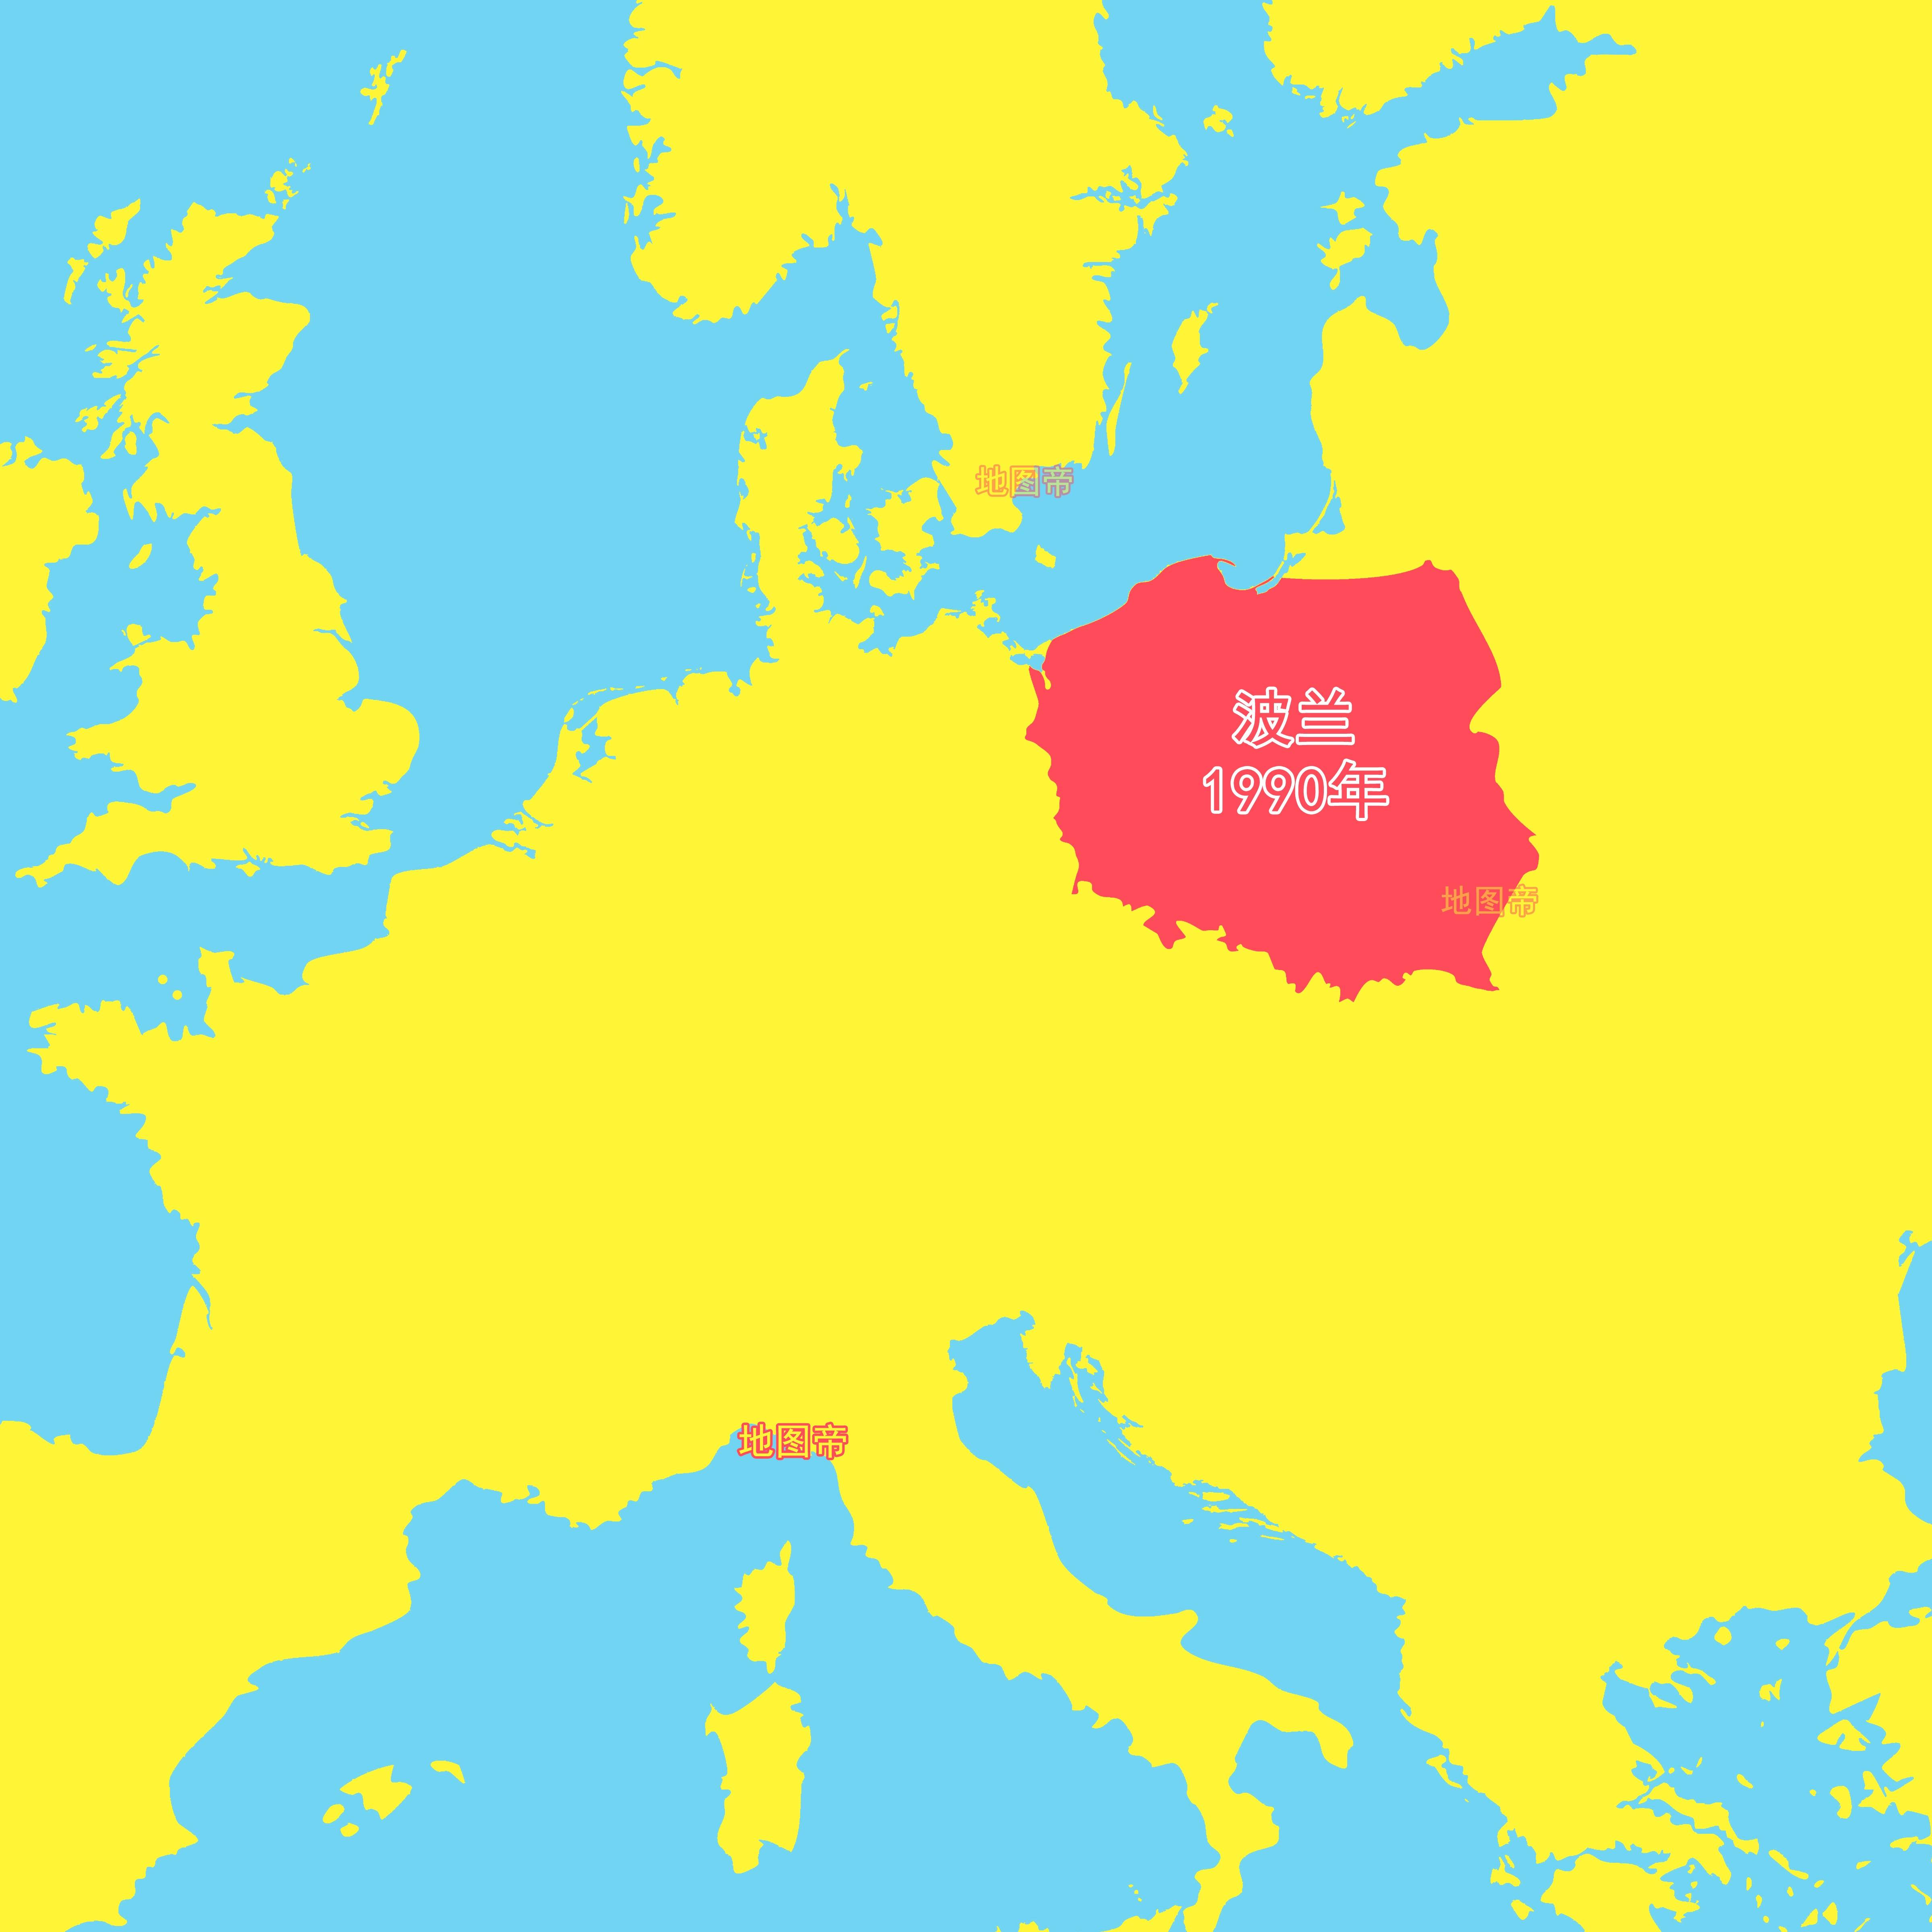 德国割让西里西亚和波美拉尼亚,波兰的版图整体西移了200多公里,面积